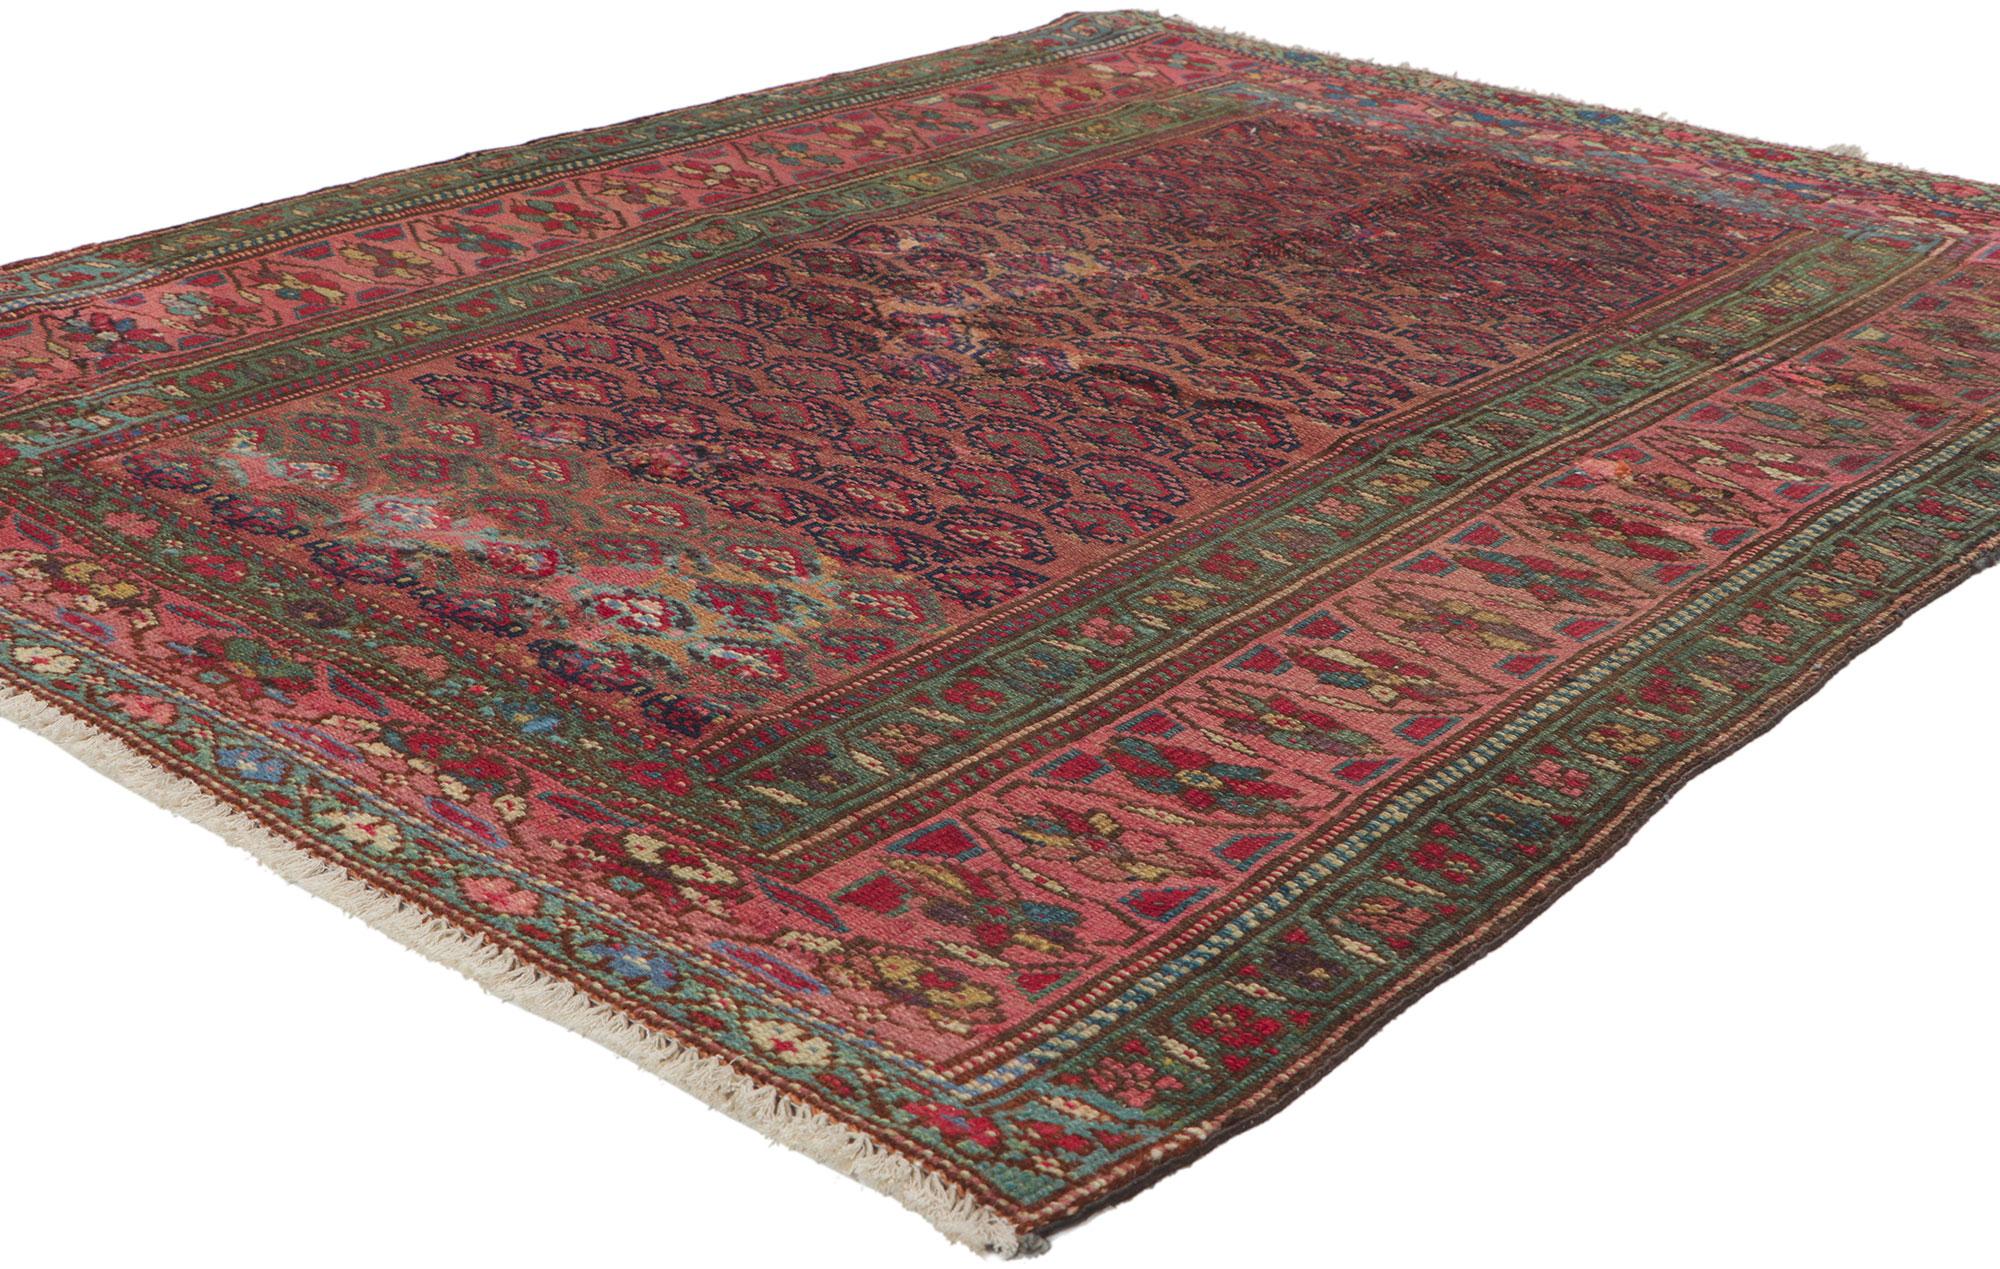 61123 Tapis persan Hamadan ancien, 03'11 x 04'11.
Avec son style intemporel, ses détails et sa texture incroyables, ce tapis Hamadan persan antique en laine noué à la main est une vision captivante de la beauté tissée. Le motif boteh répétitif et la